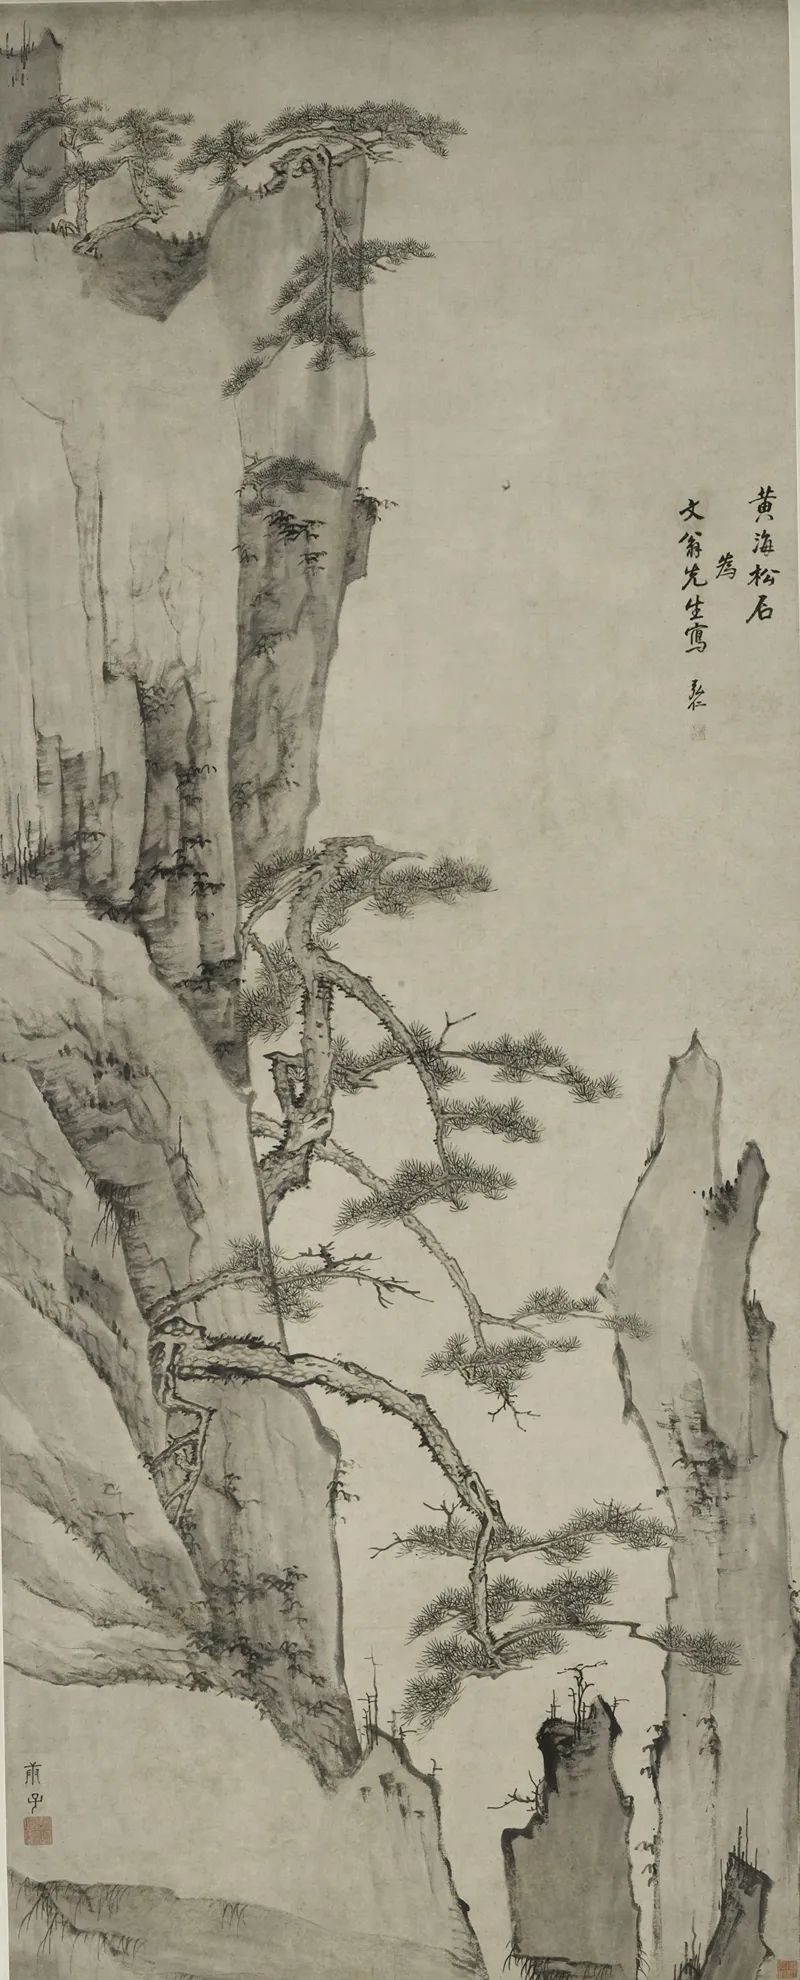 渐江 黄海松石图轴 清顺治十七年(1660年)庚子 上海博物馆藏